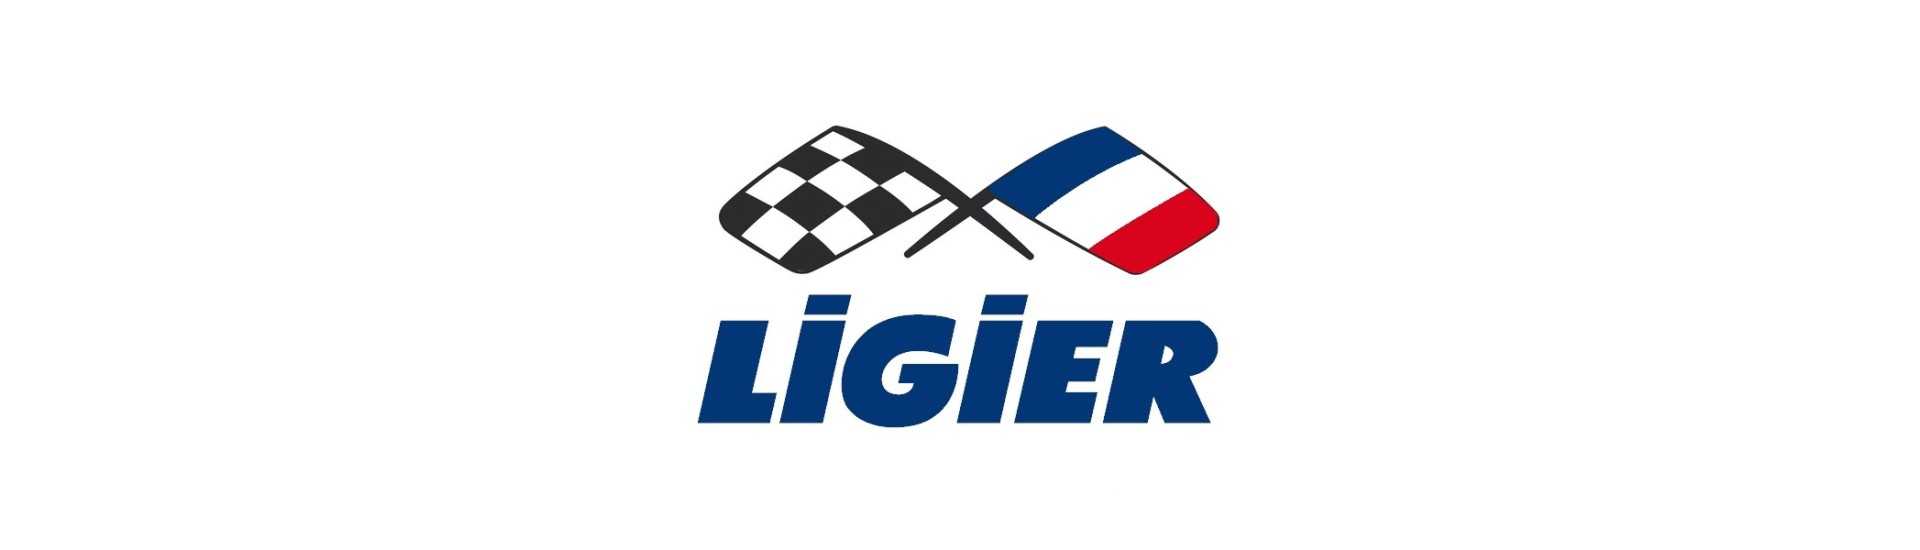 Volante al miglior prezzo per un'auto senza patente Ligier